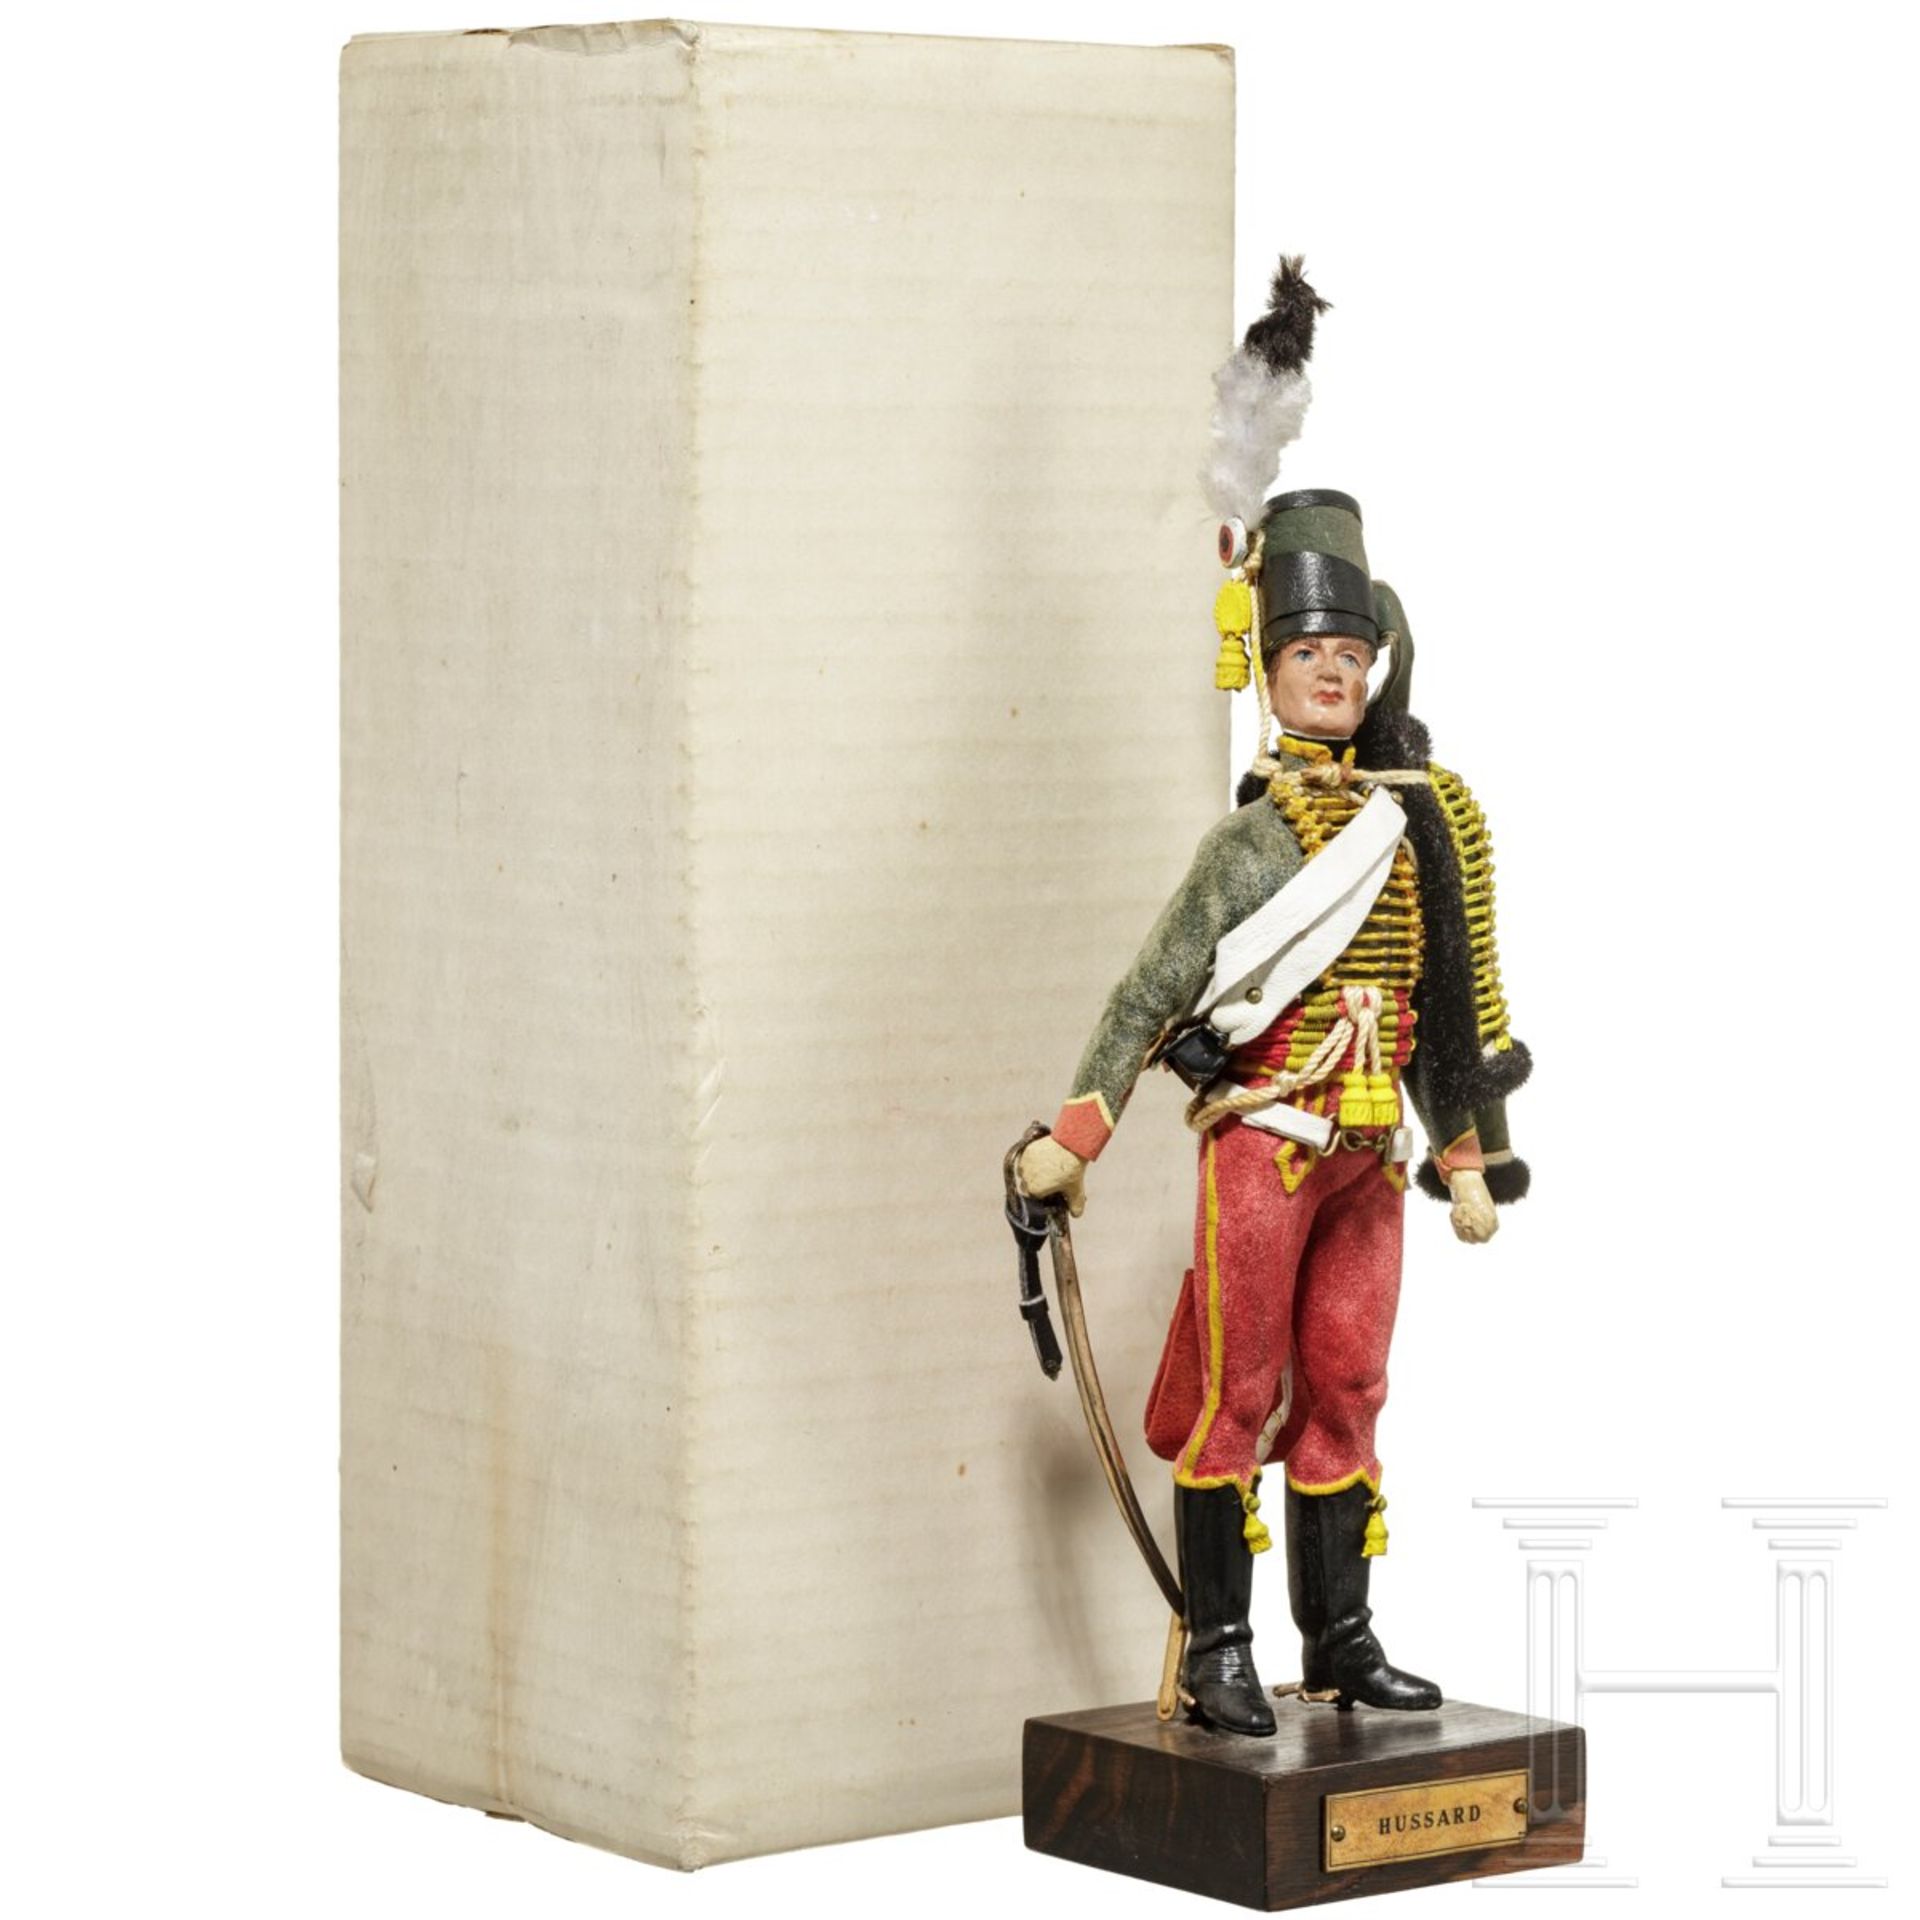 Husar um 1790 - Uniformfigur von Marcel Riffet, 20. Jhdt.